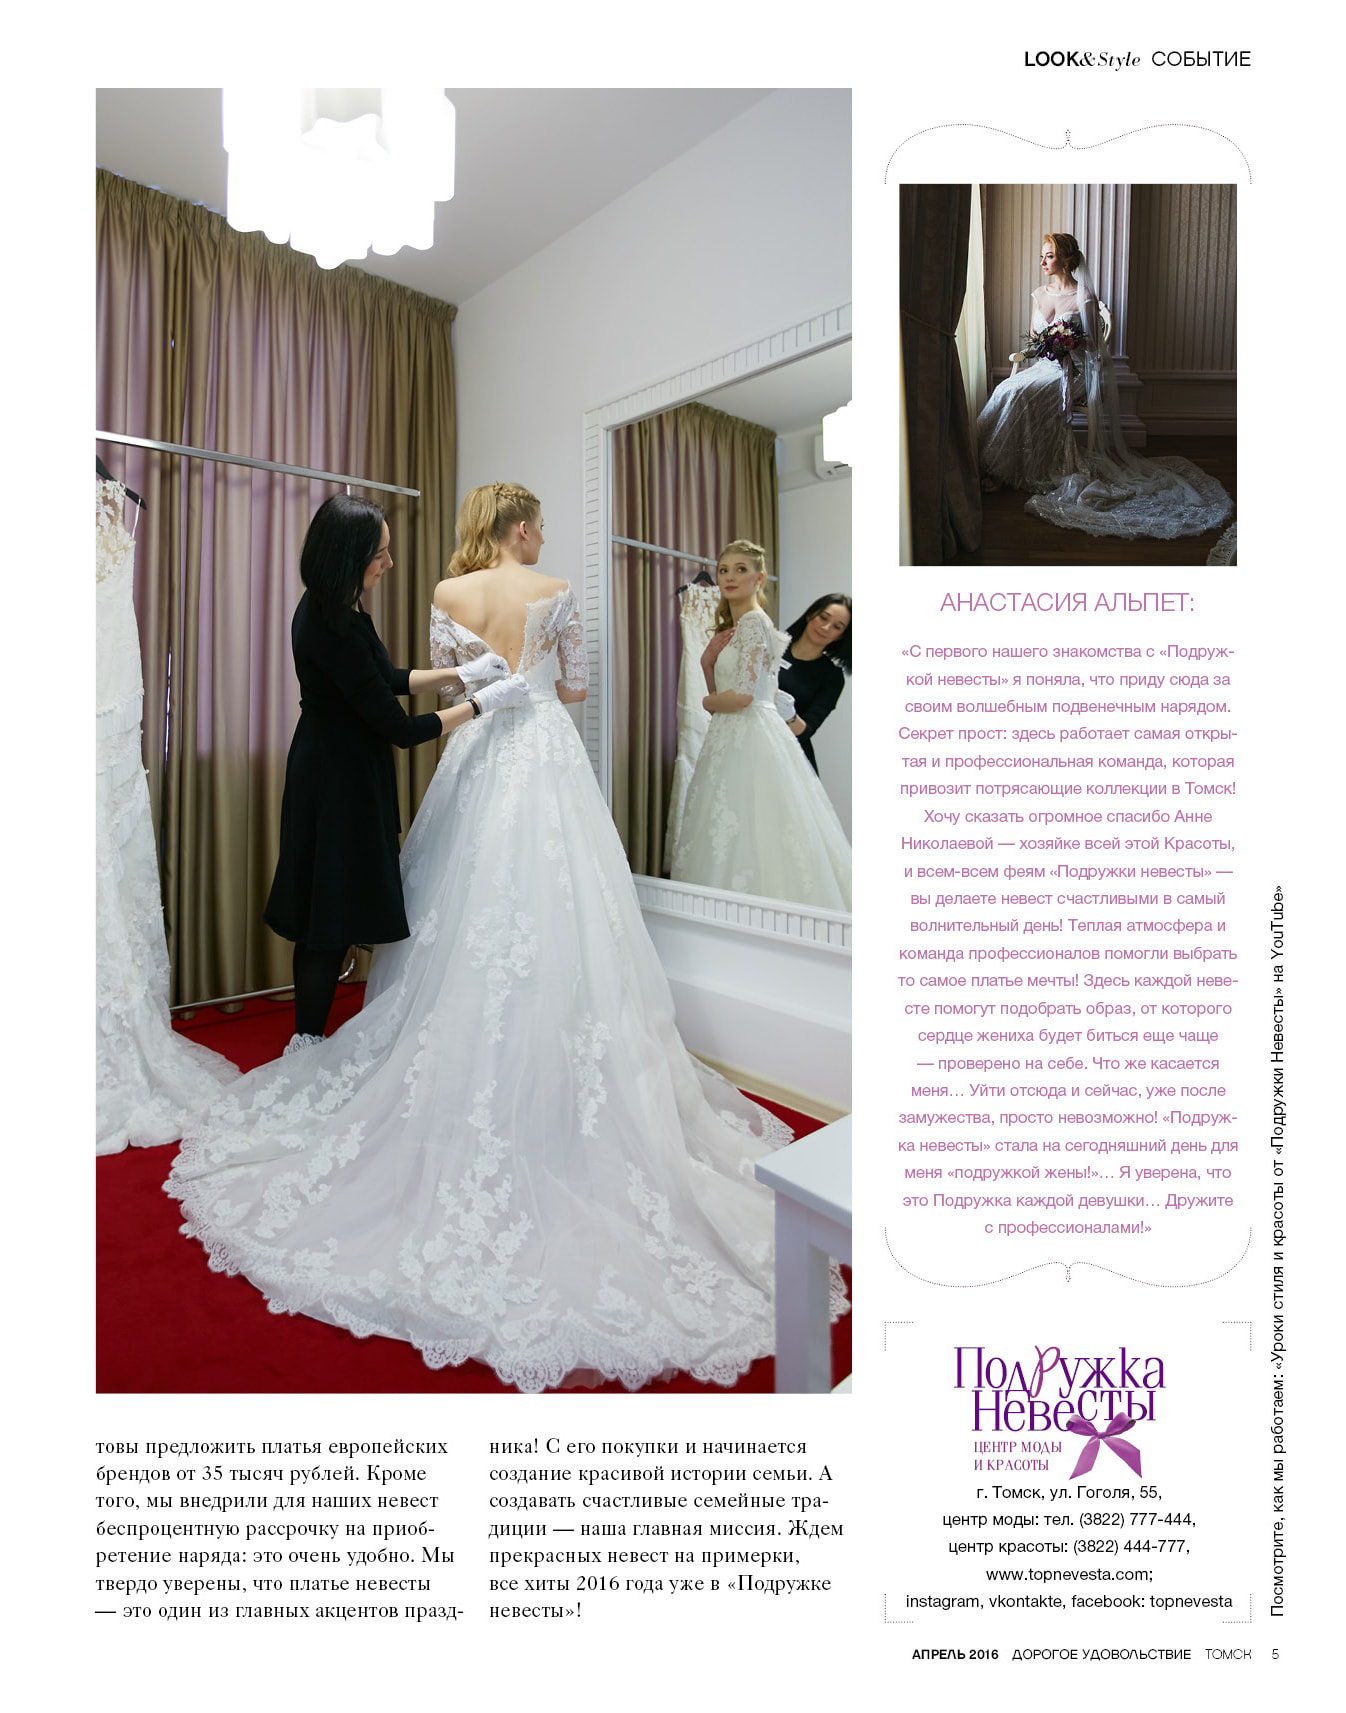 Страница журнала дорогое удовольствие Счастливое свадебное платье